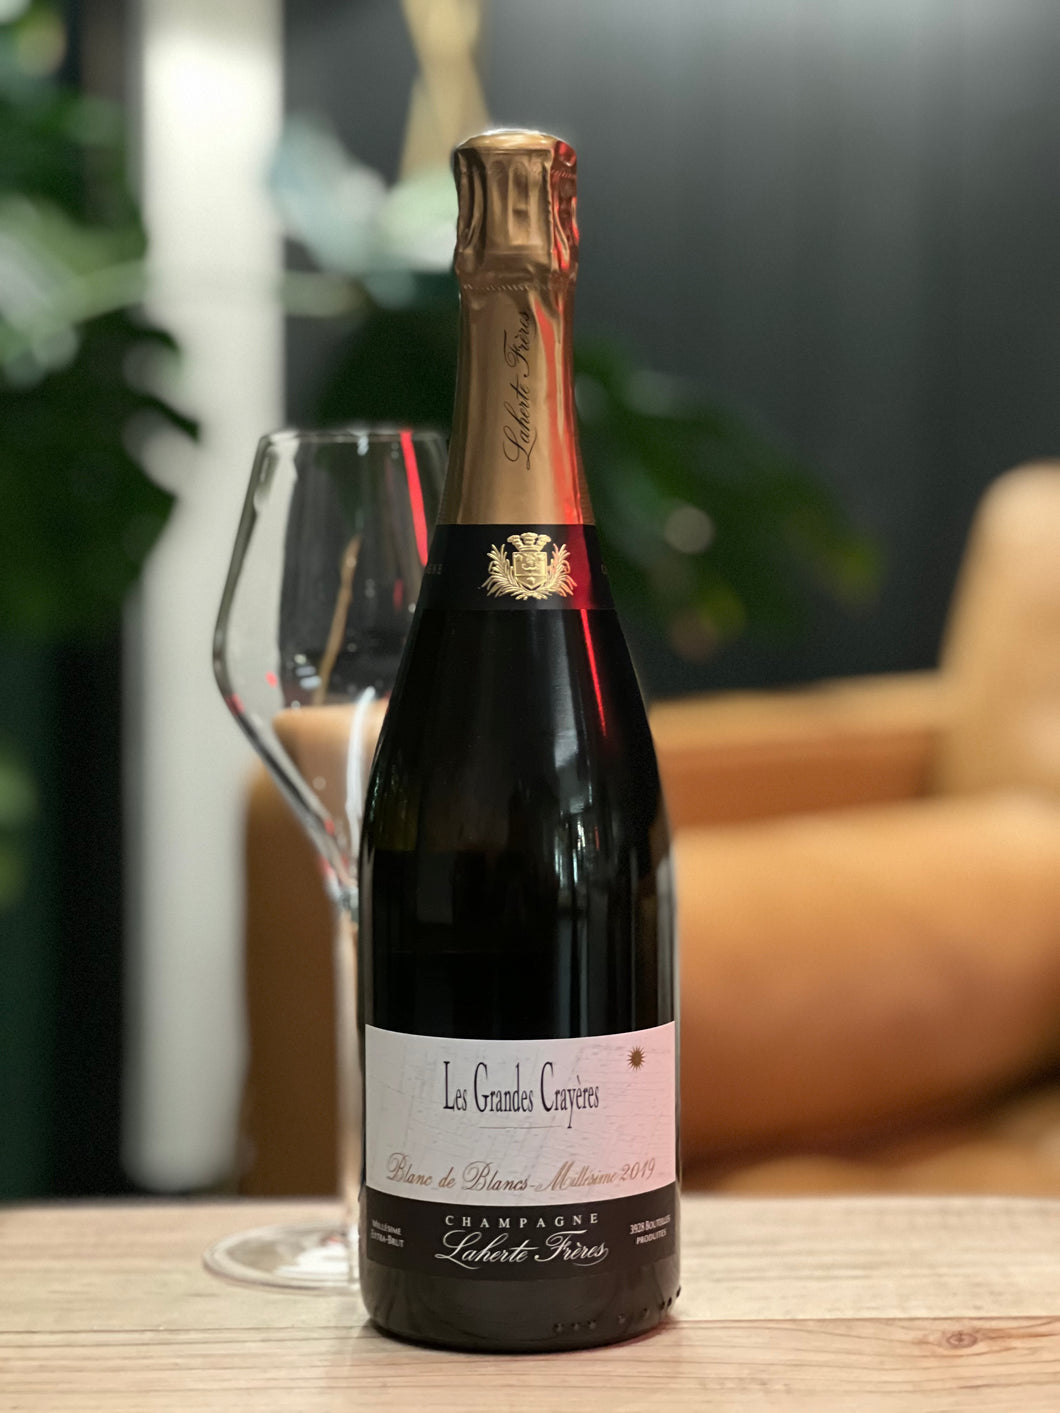 Champagne, Laherte Frères “Les Grandes Crayères” Blanc de Blancs Extra Brut 2019